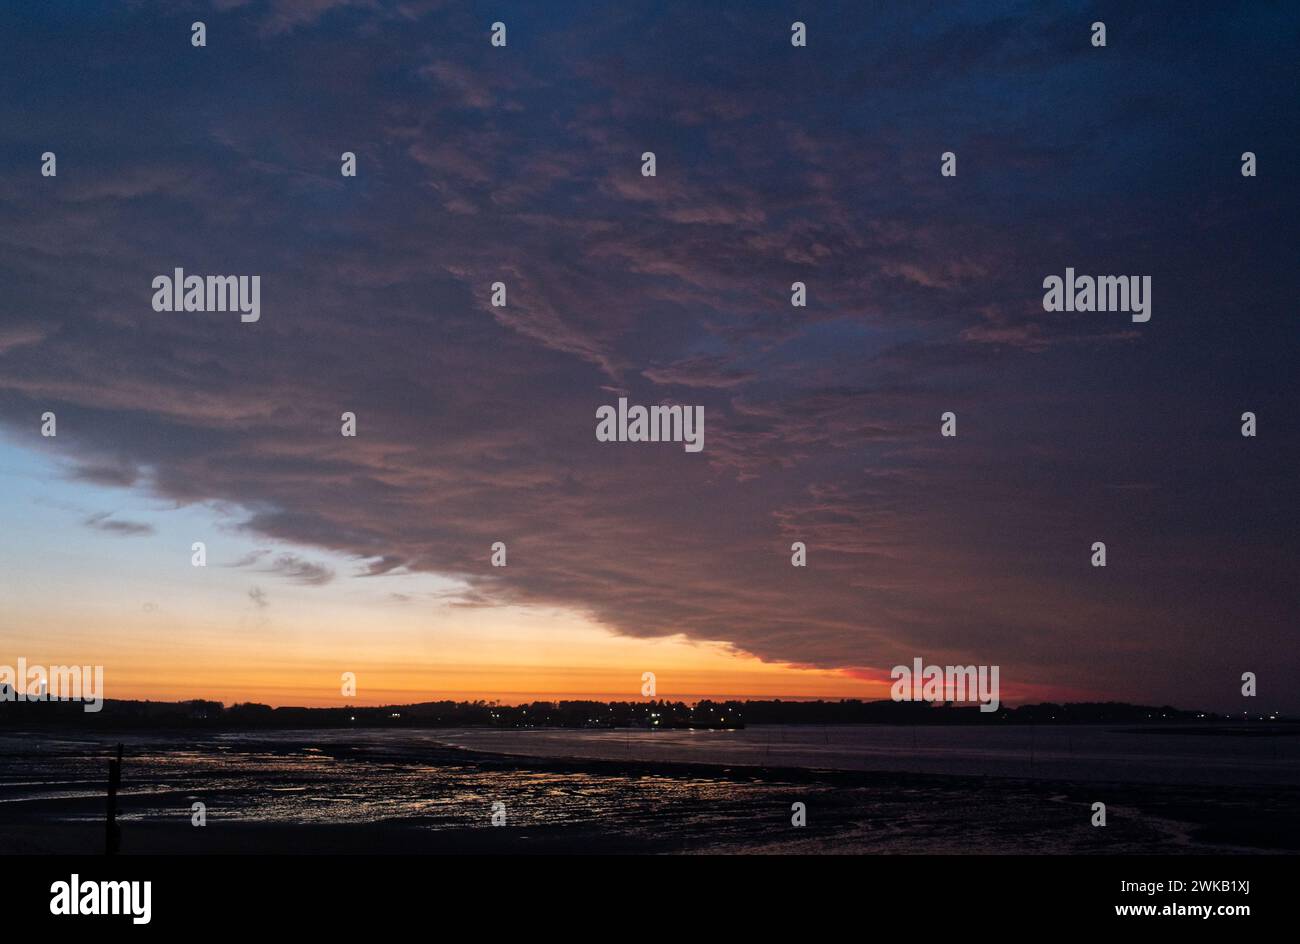 Spektakulärer Sonnenuntergang auf der Insel Amrum Stock Photo